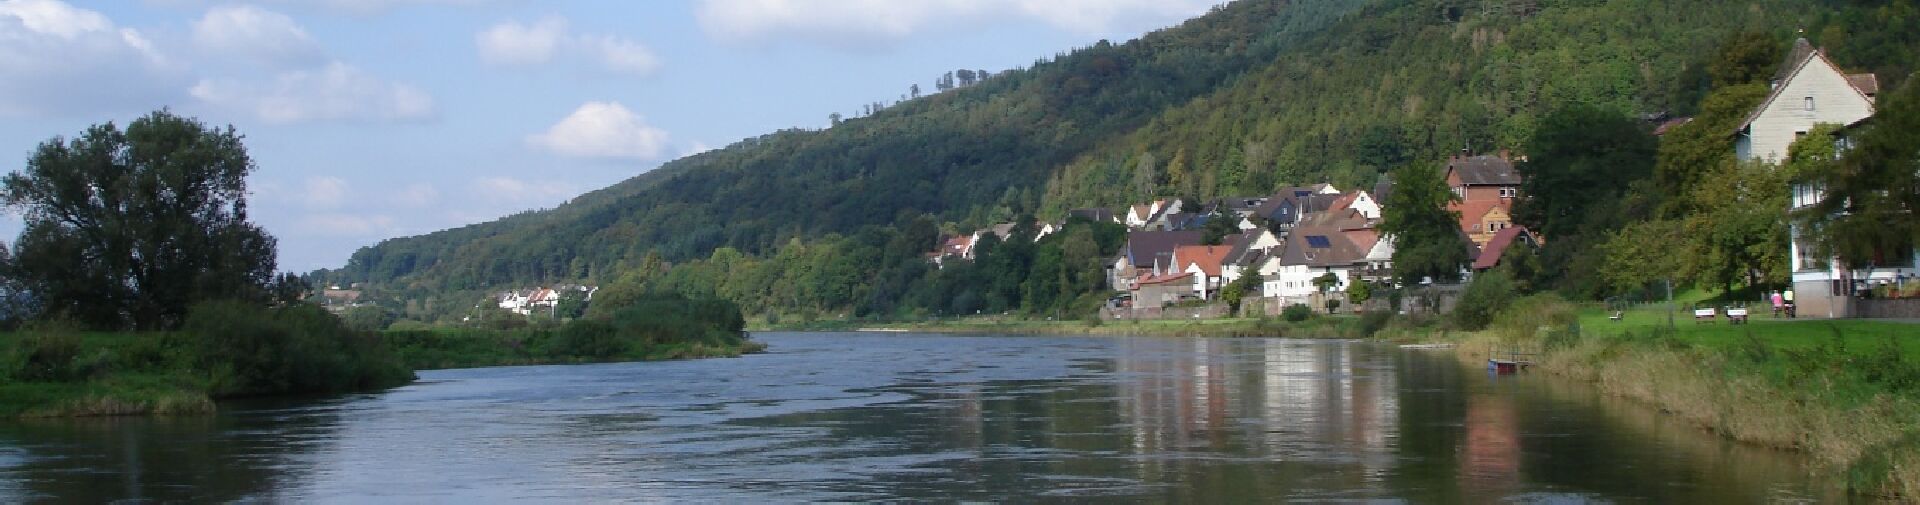 Weser bei Rühle